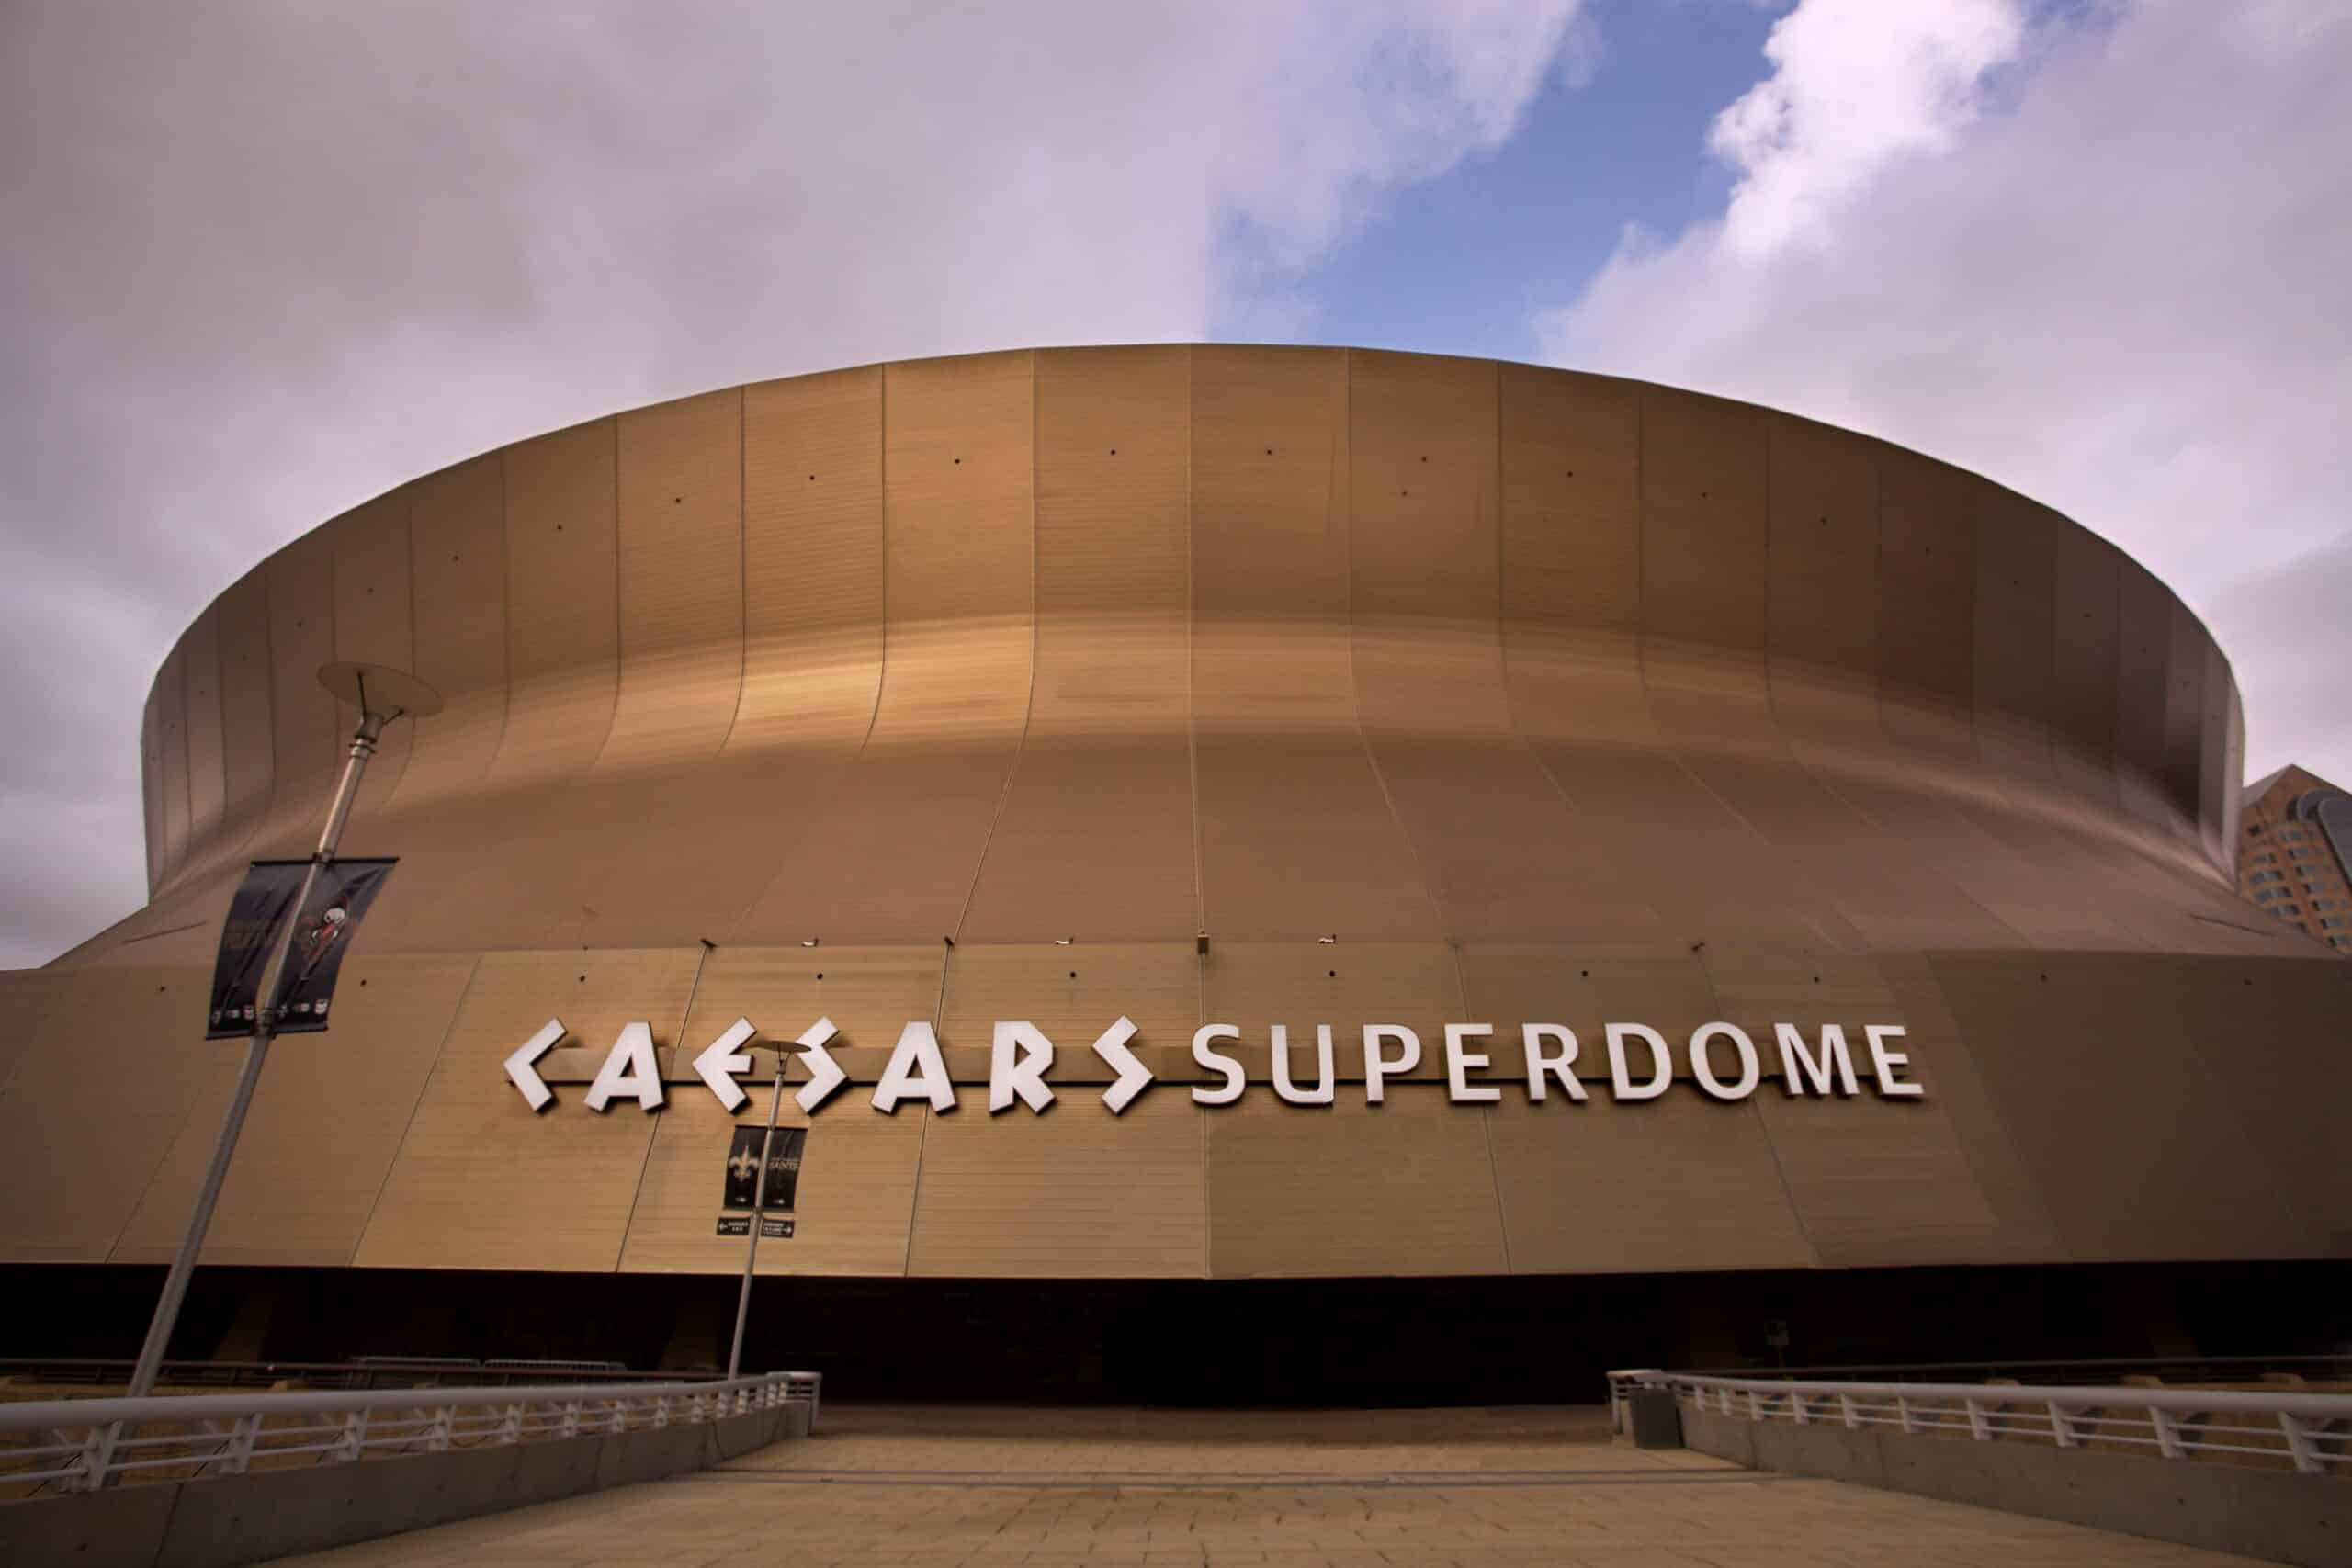 Caesars Superdome Image